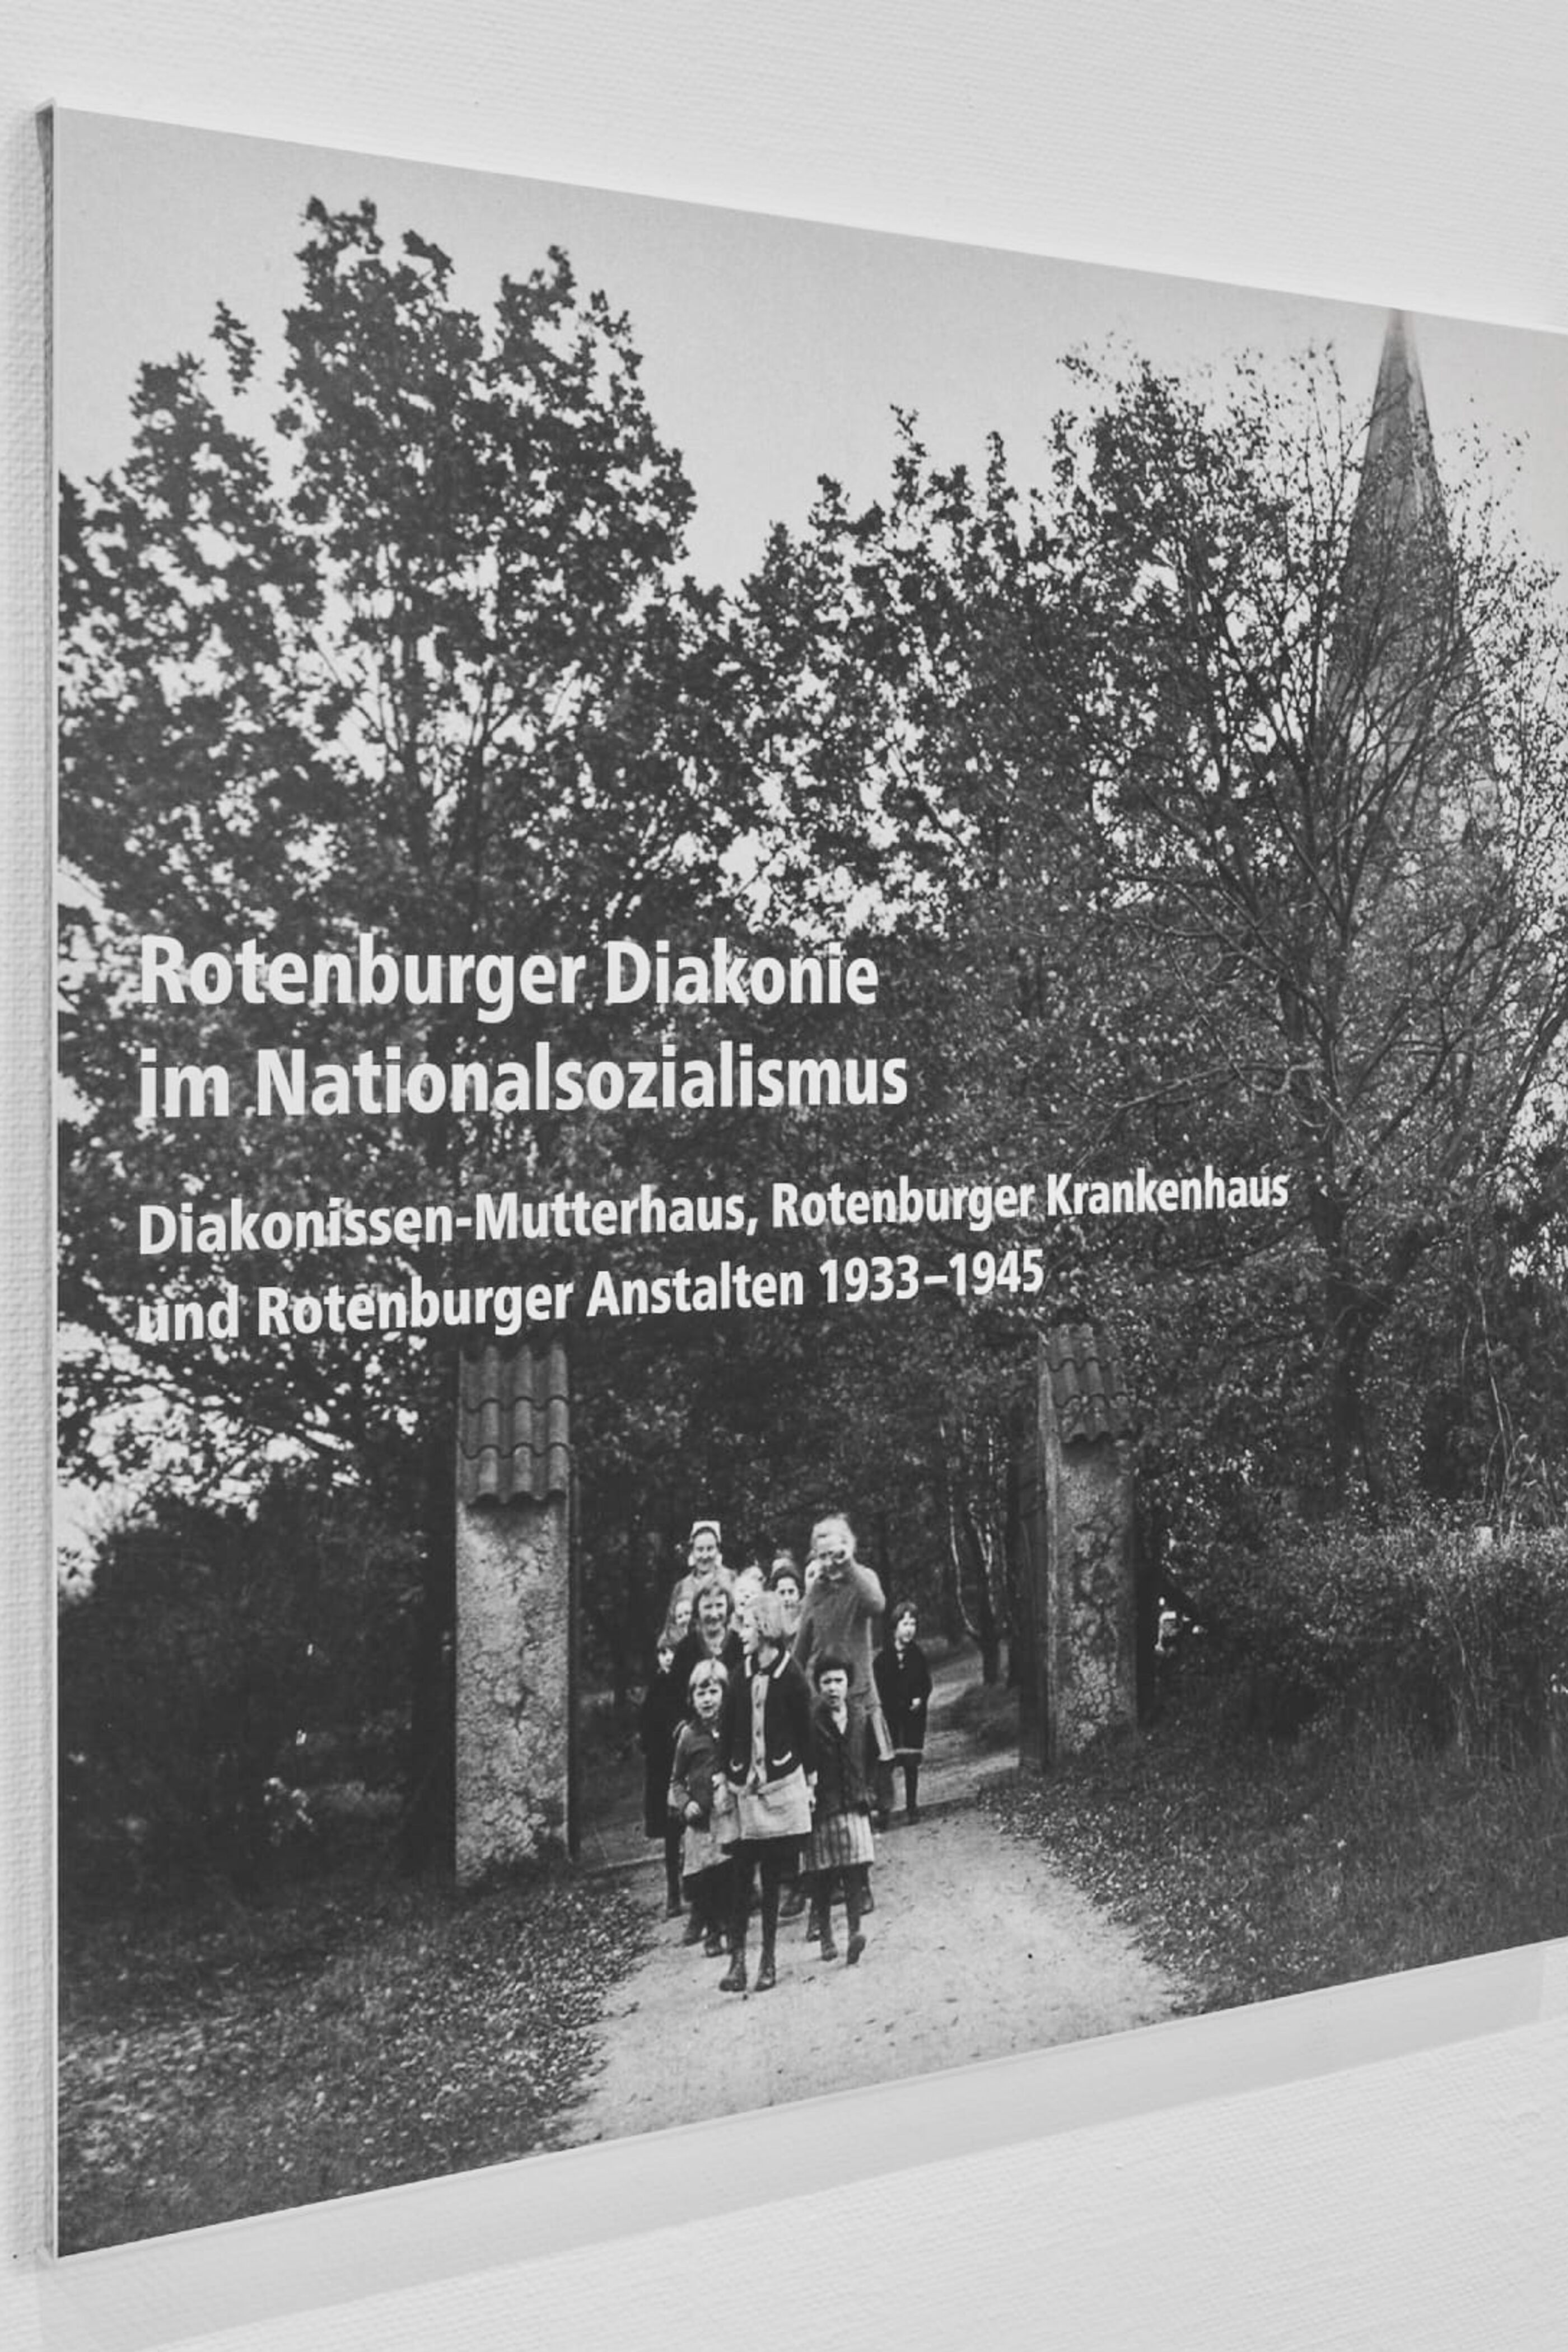 In einer Ausstellung informiert die Rotenburger Diakonie über ihre Rolle im Nationalsozialismus. Foto: Rotenburger Diakonie